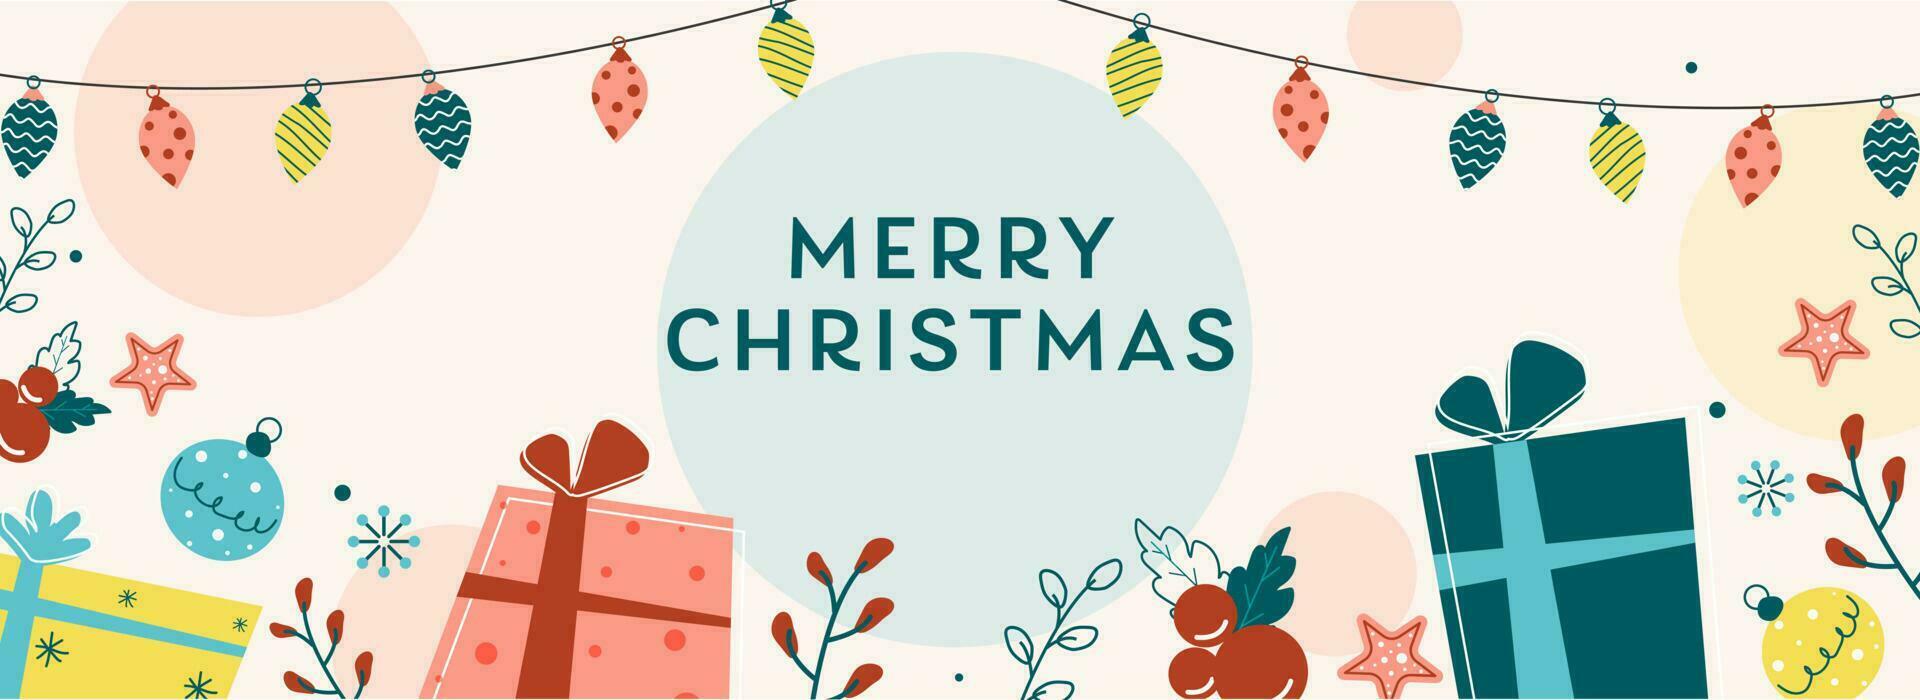 Vektor Illustration von Geschenk Kisten mit Stechpalme Beeren, Sterne, Kugeln und Beleuchtung Girlande dekoriert Hintergrund zum fröhlich Weihnachten.